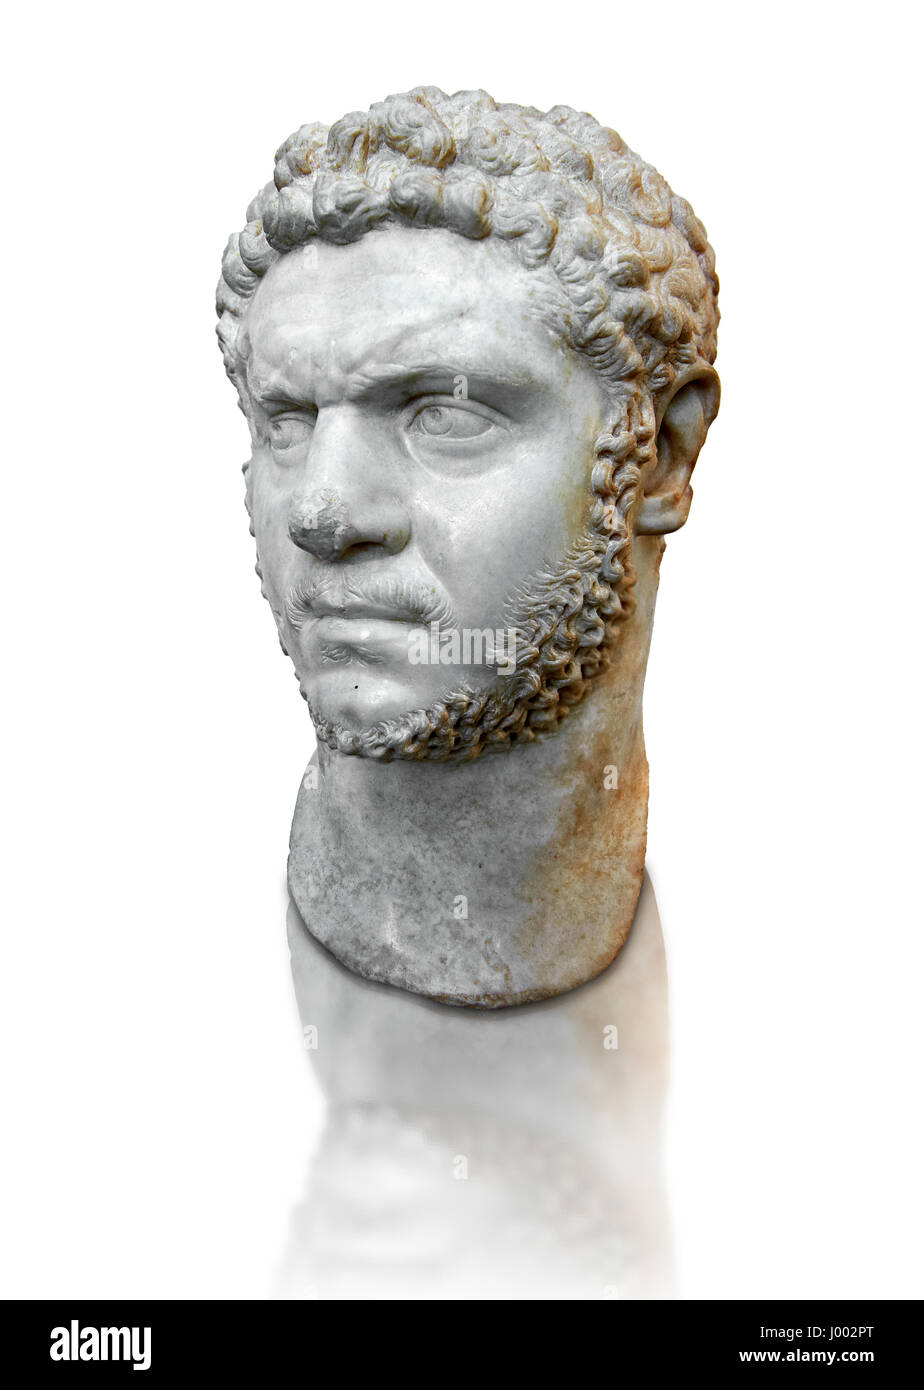 Römische Skulptur Büste des Marcus Aurelius Severus Antoninus Augustus besser bekannt als Caracalla, etwa 210 n. Chr., römisches Nationalmuseum, Rom, Italien Stockfoto